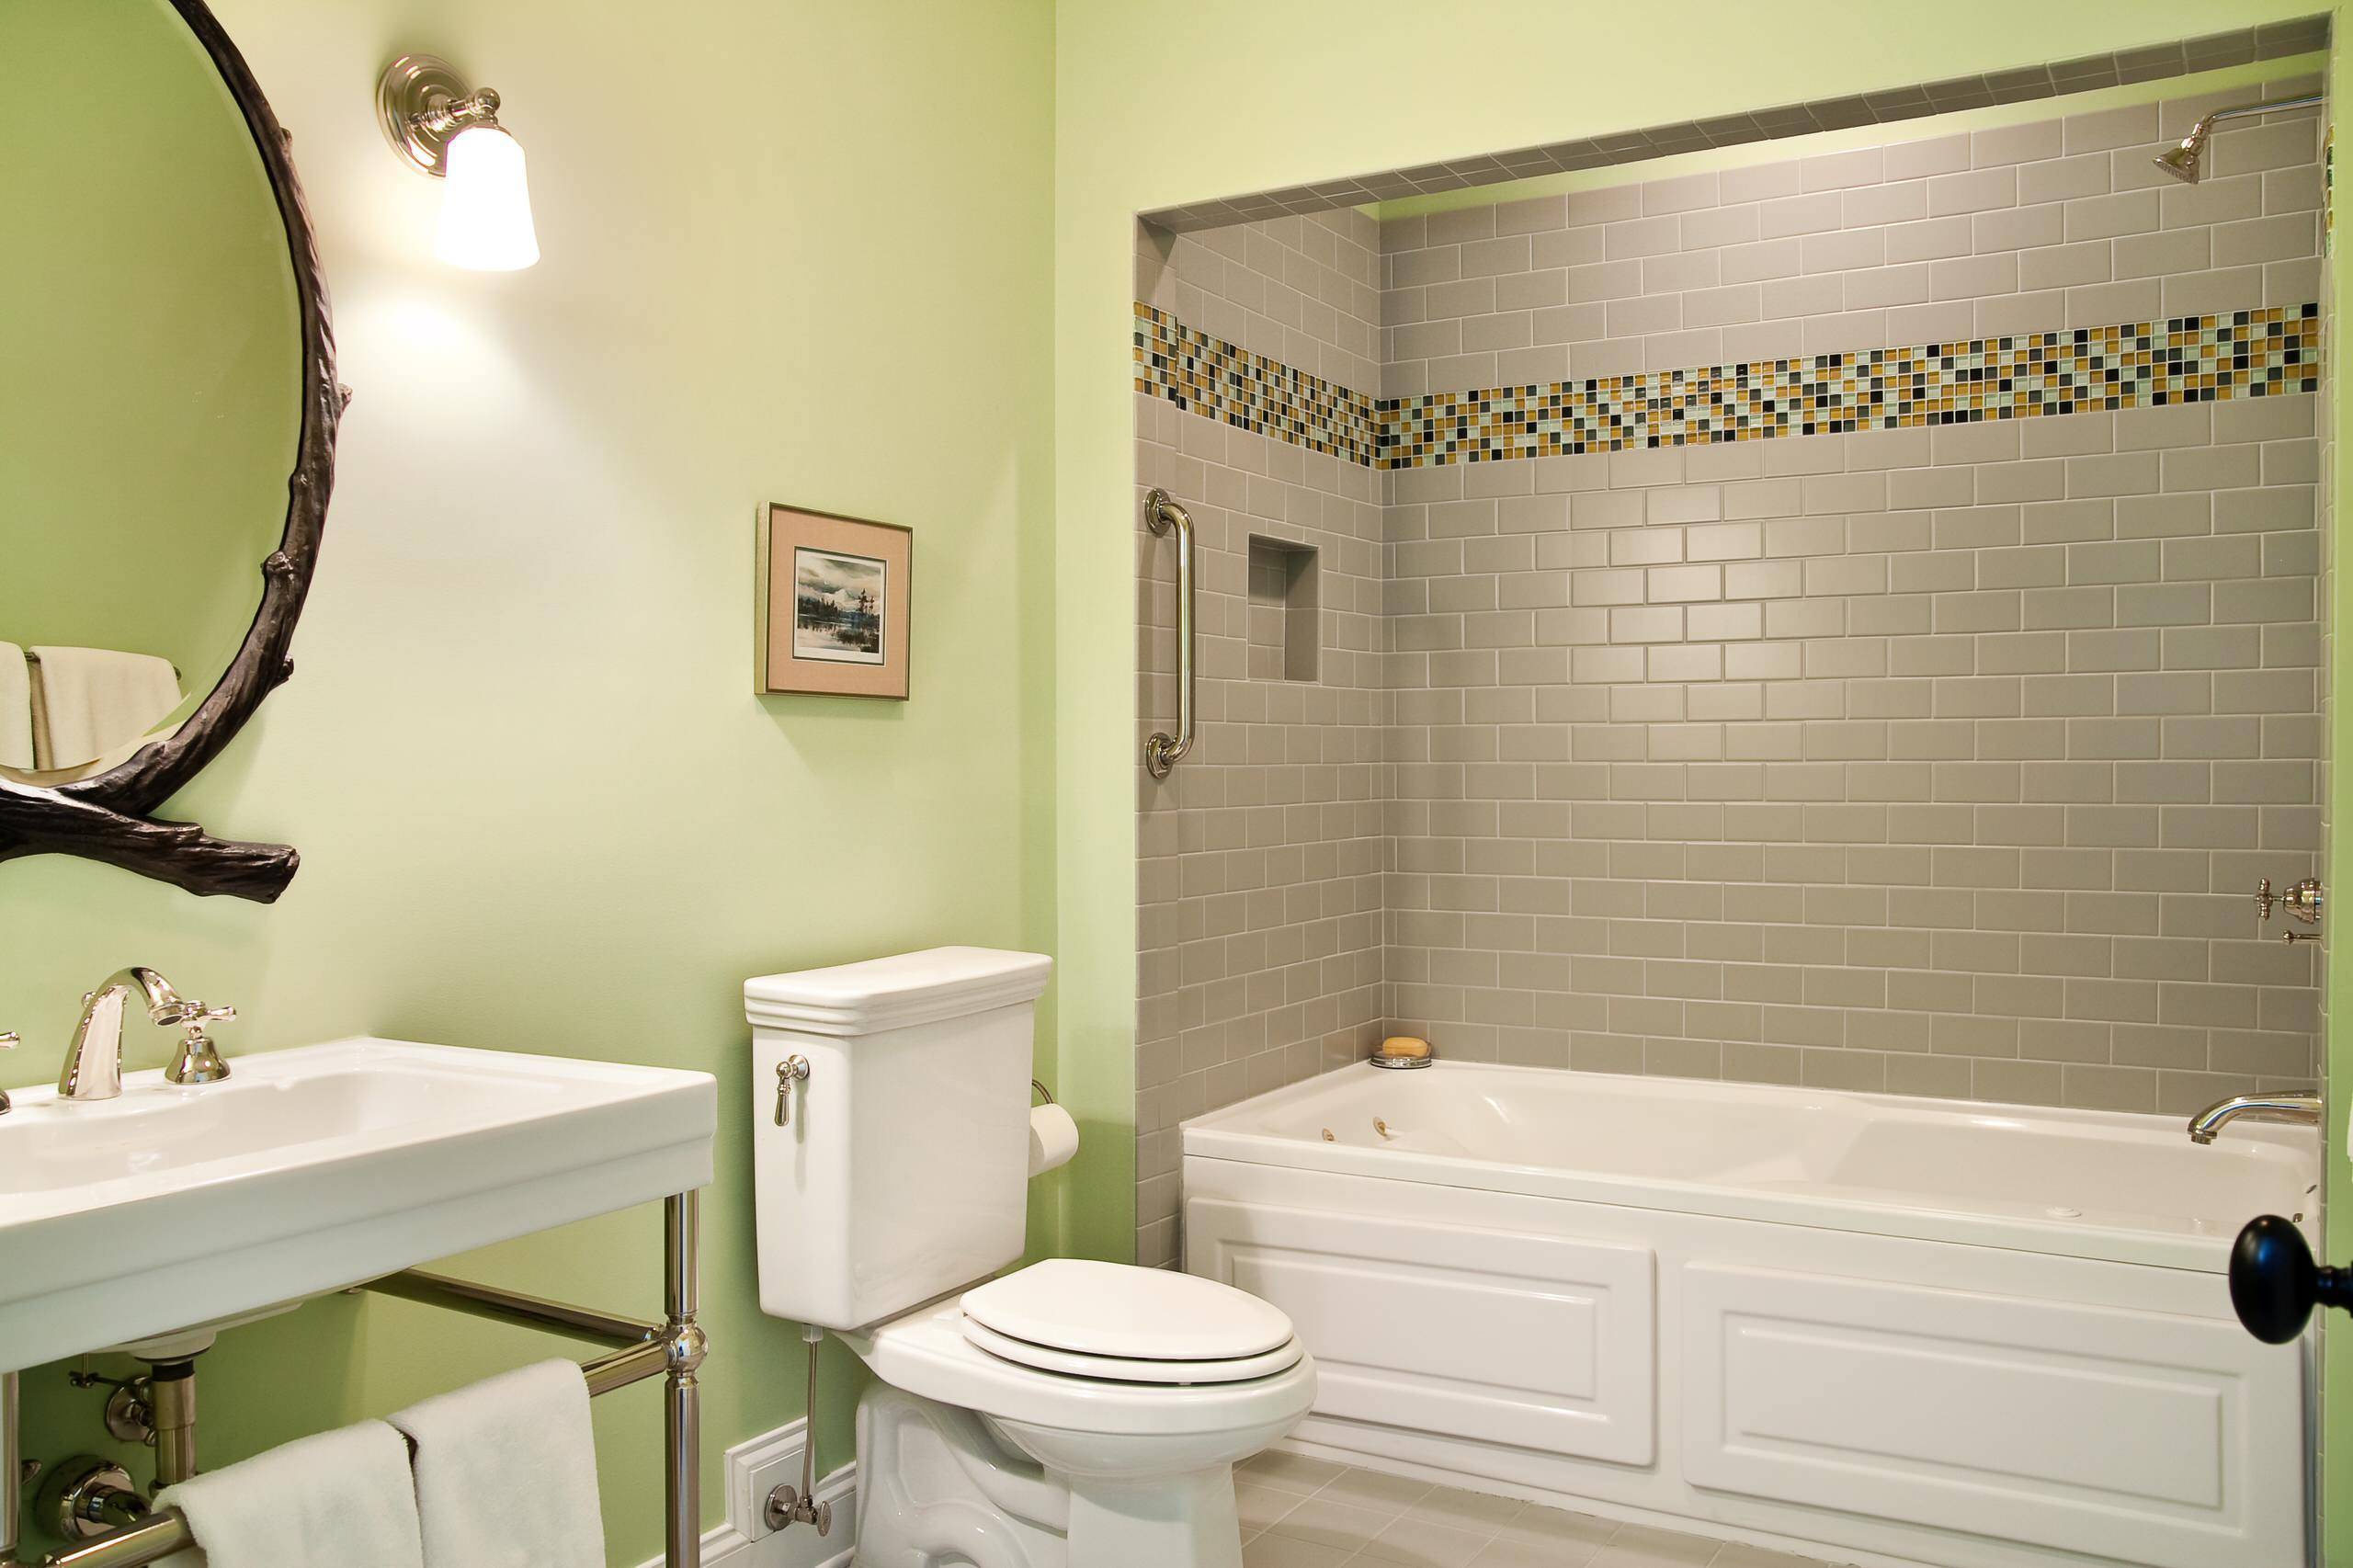 Чем отделывают стены в ванной кроме плитки?